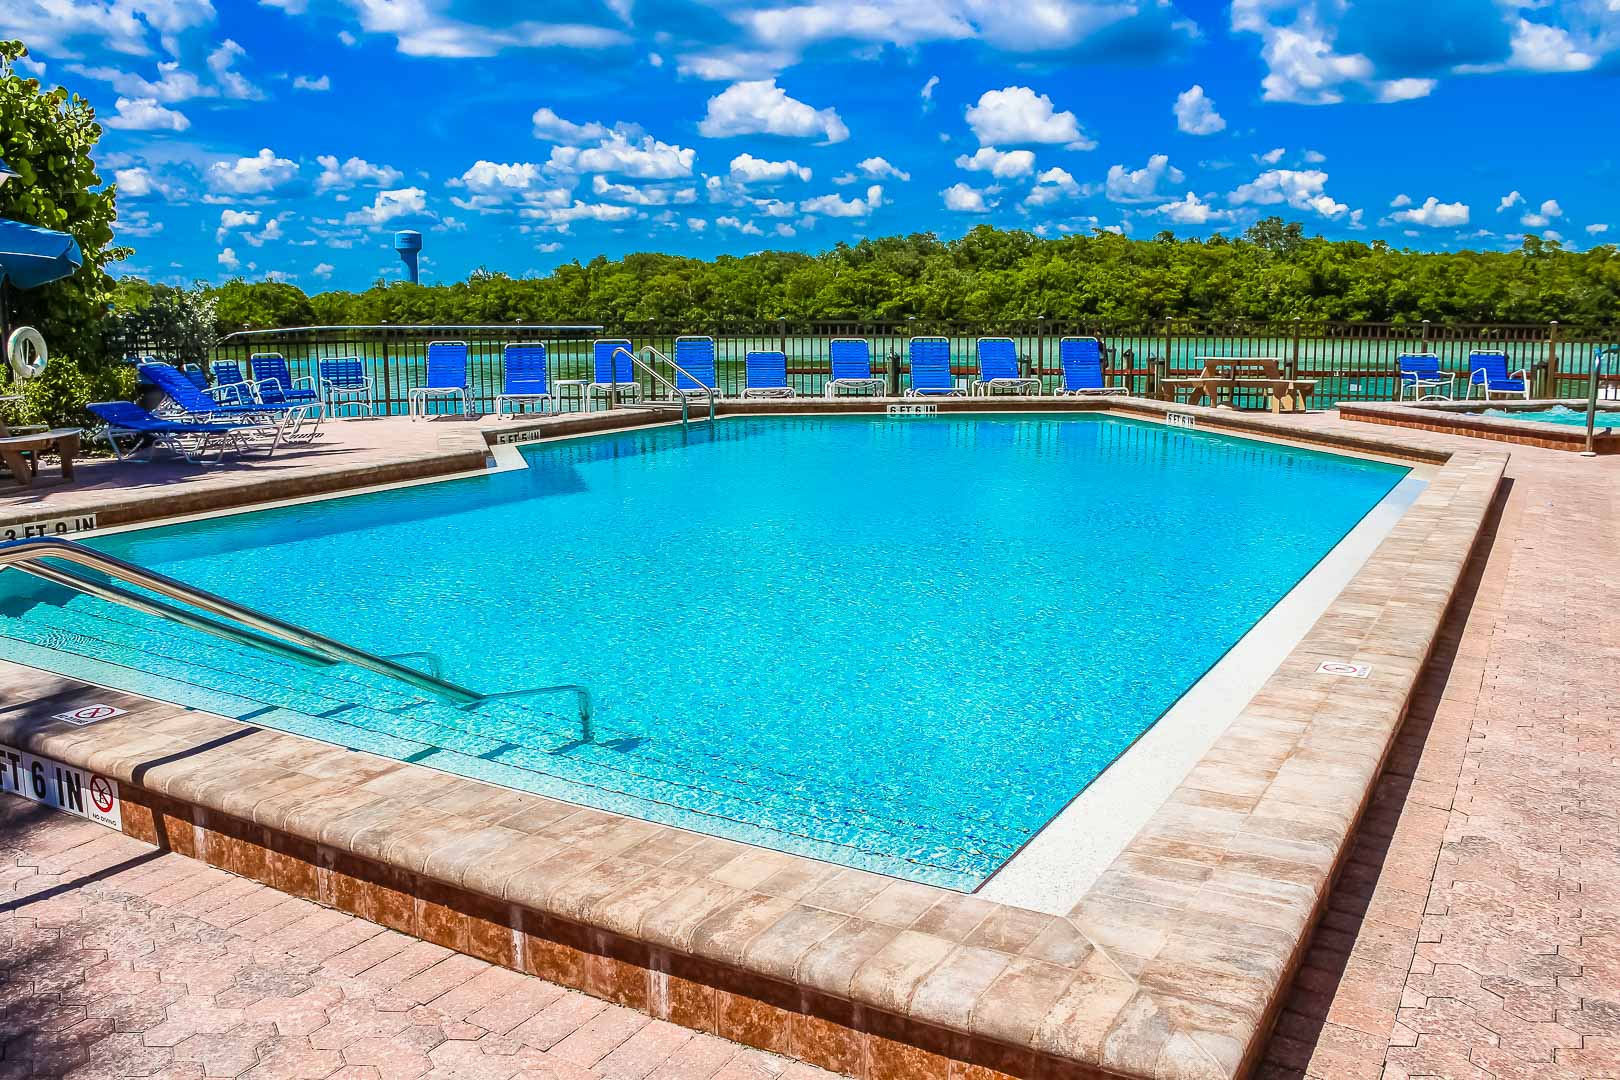 A crisp outdoor swimming pool at VRI's Bonita Resort and Club in Florida.